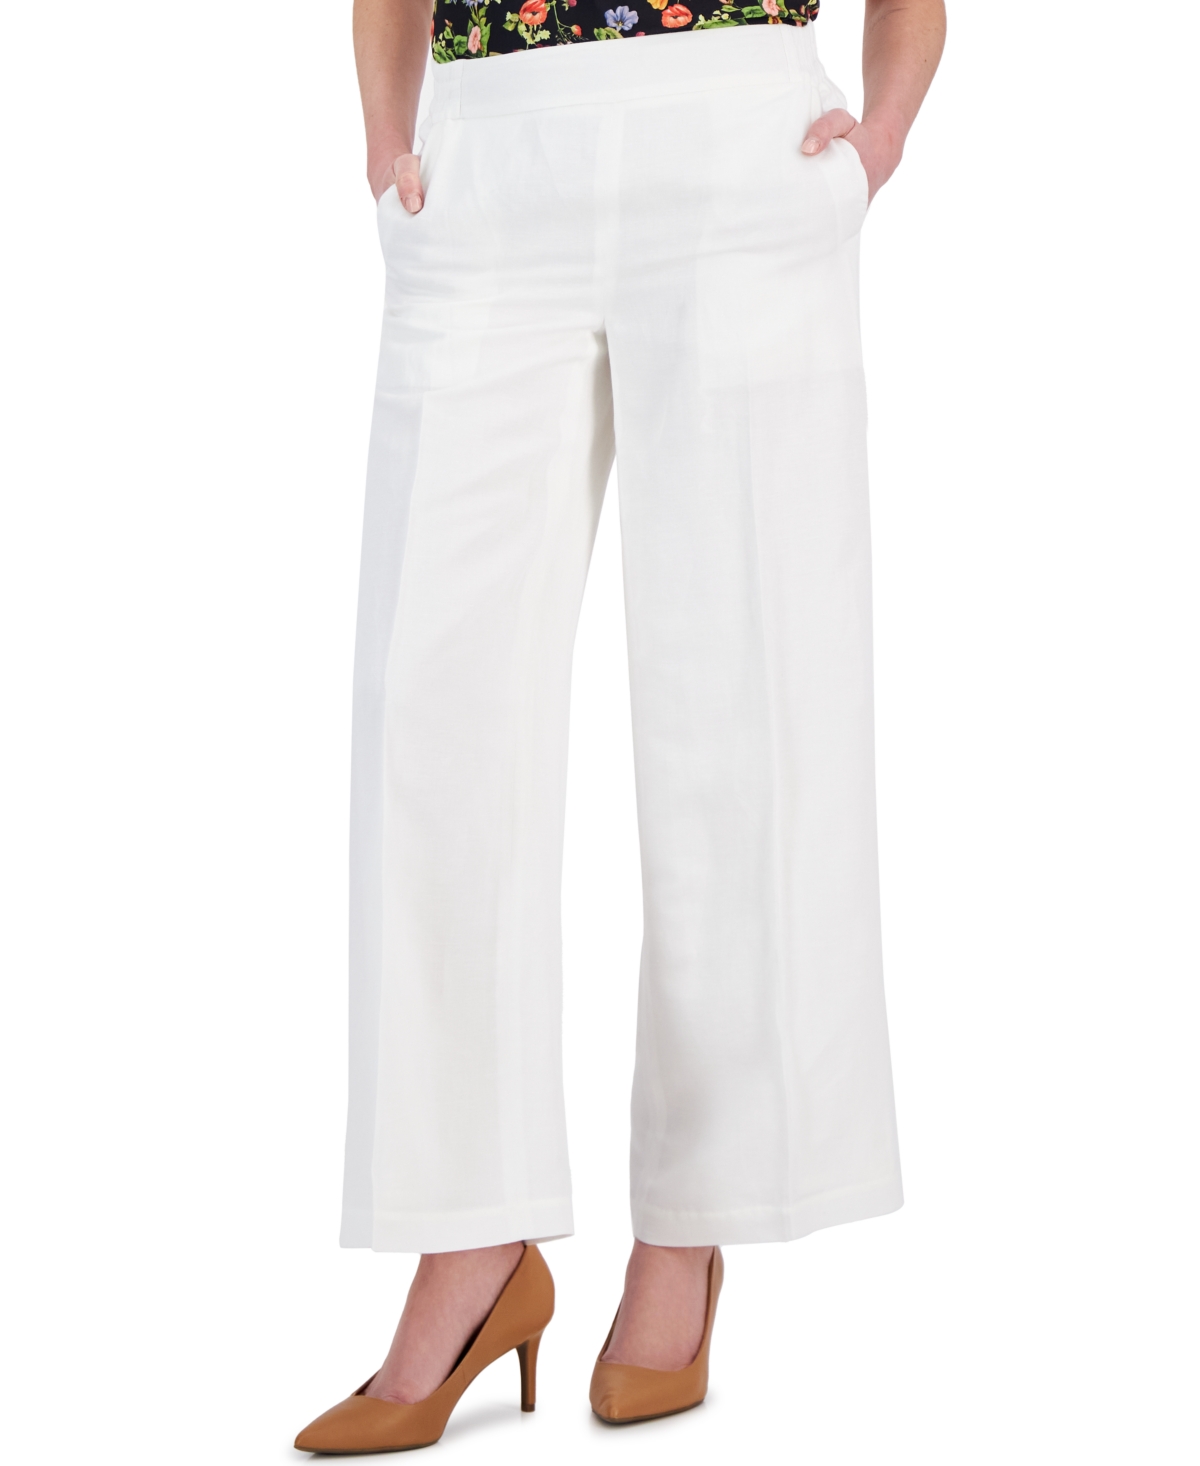 Women's Linen-Blend Pull-On Wide-Leg Pants - White Star